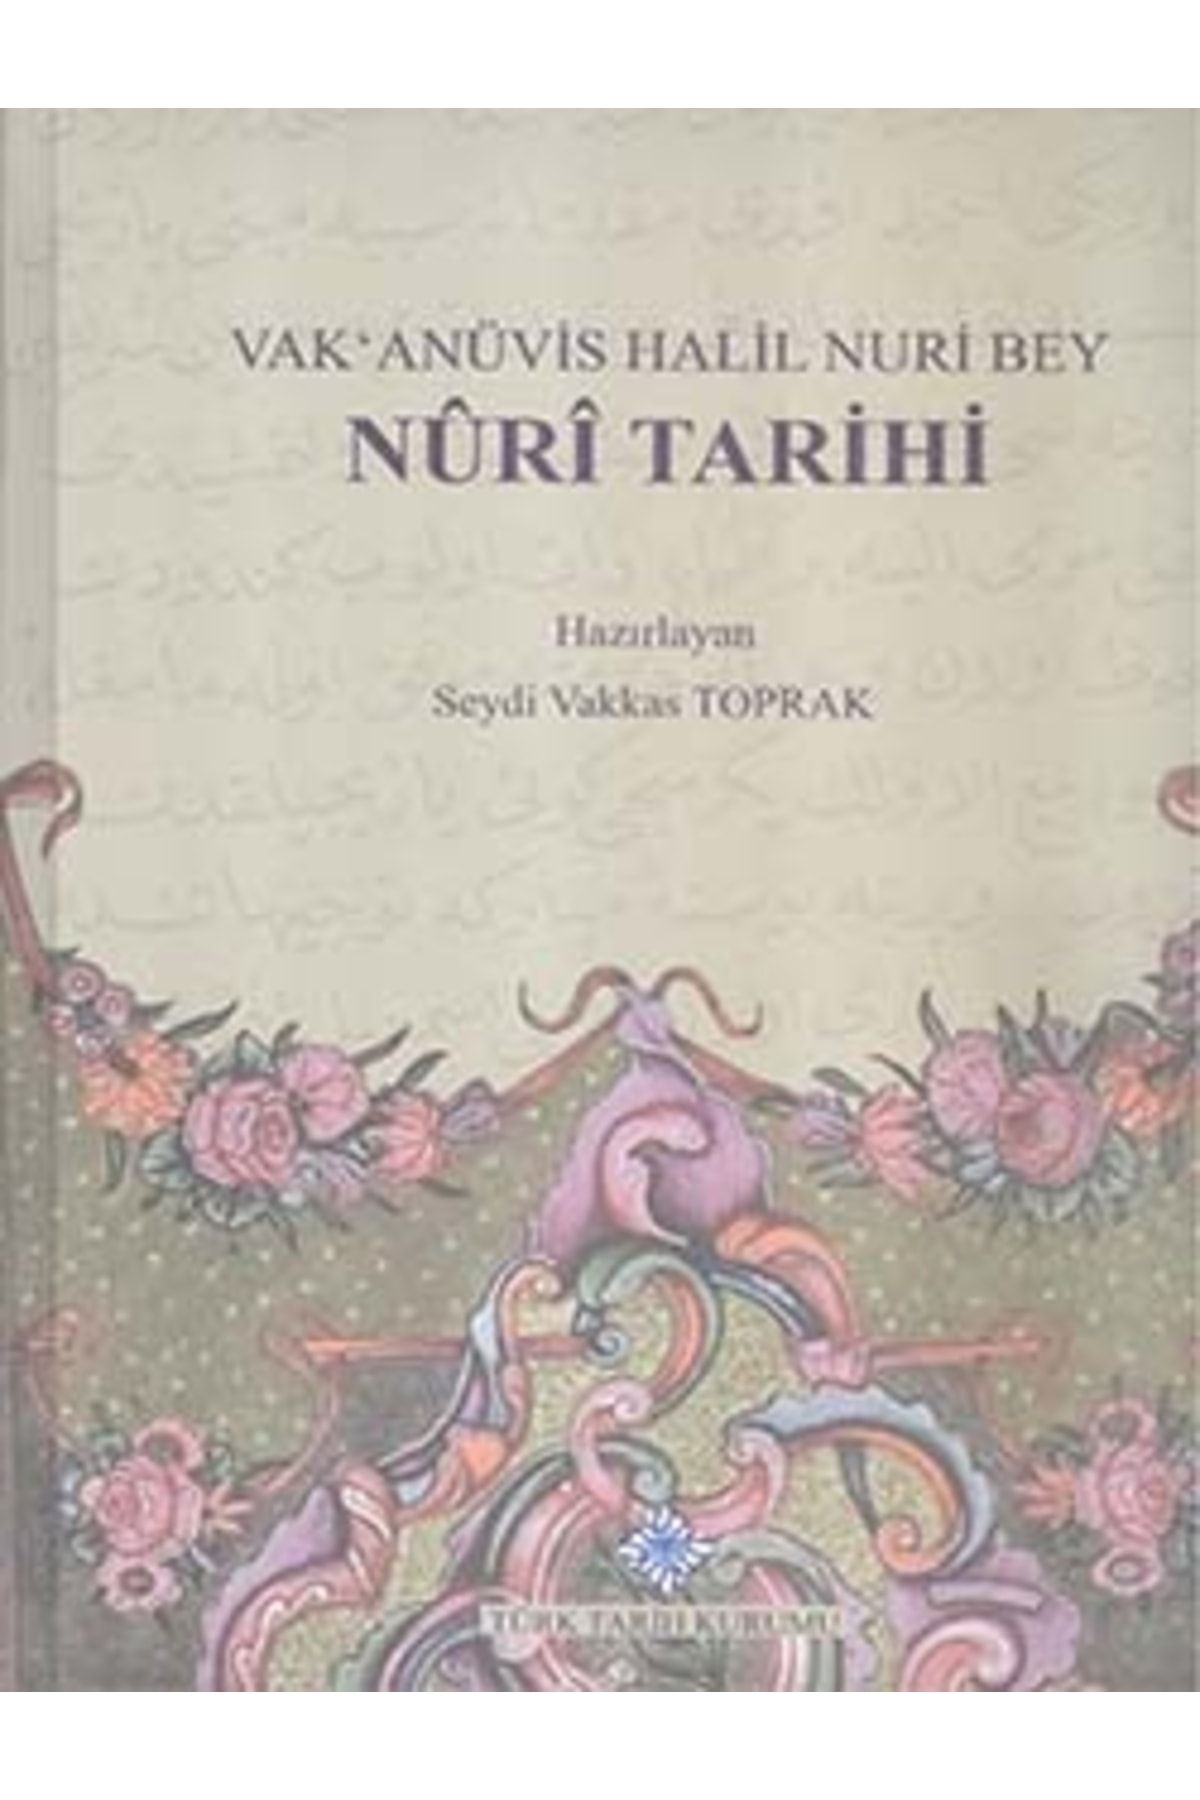 Türk Tarih Kurumu Yayınları Nuri Tarihi, Vak`anüvis Halil Nuri Bey, 2015